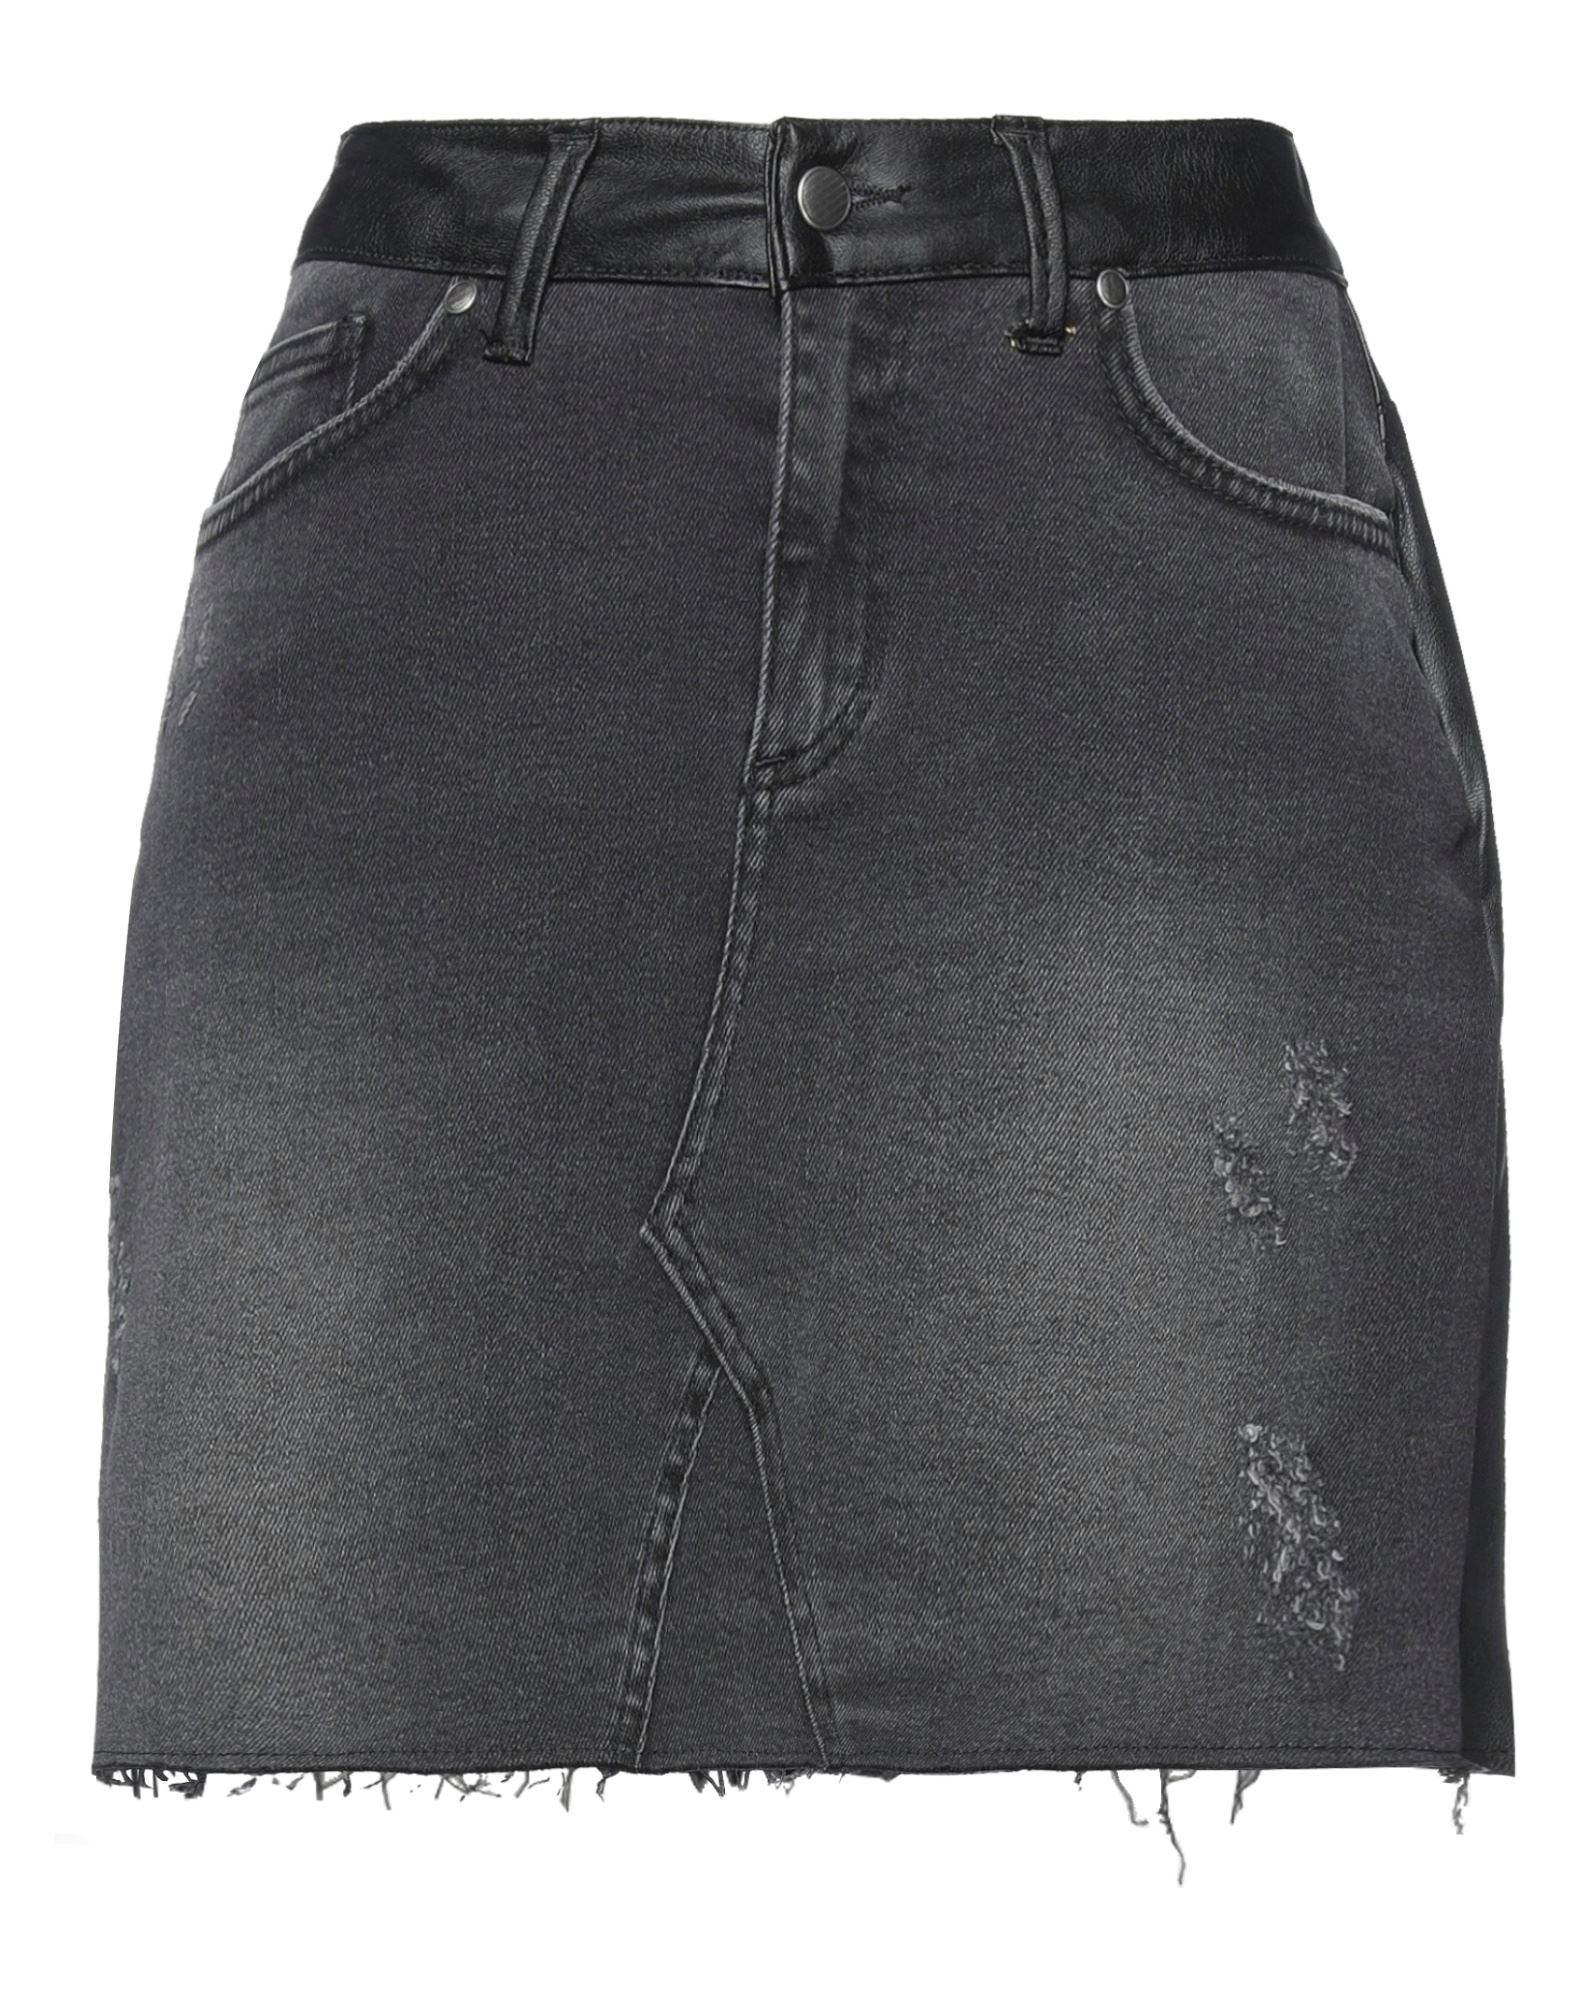 Shop Brand Unique Woman Denim Skirt Black Size 1 Cotton, Elastane